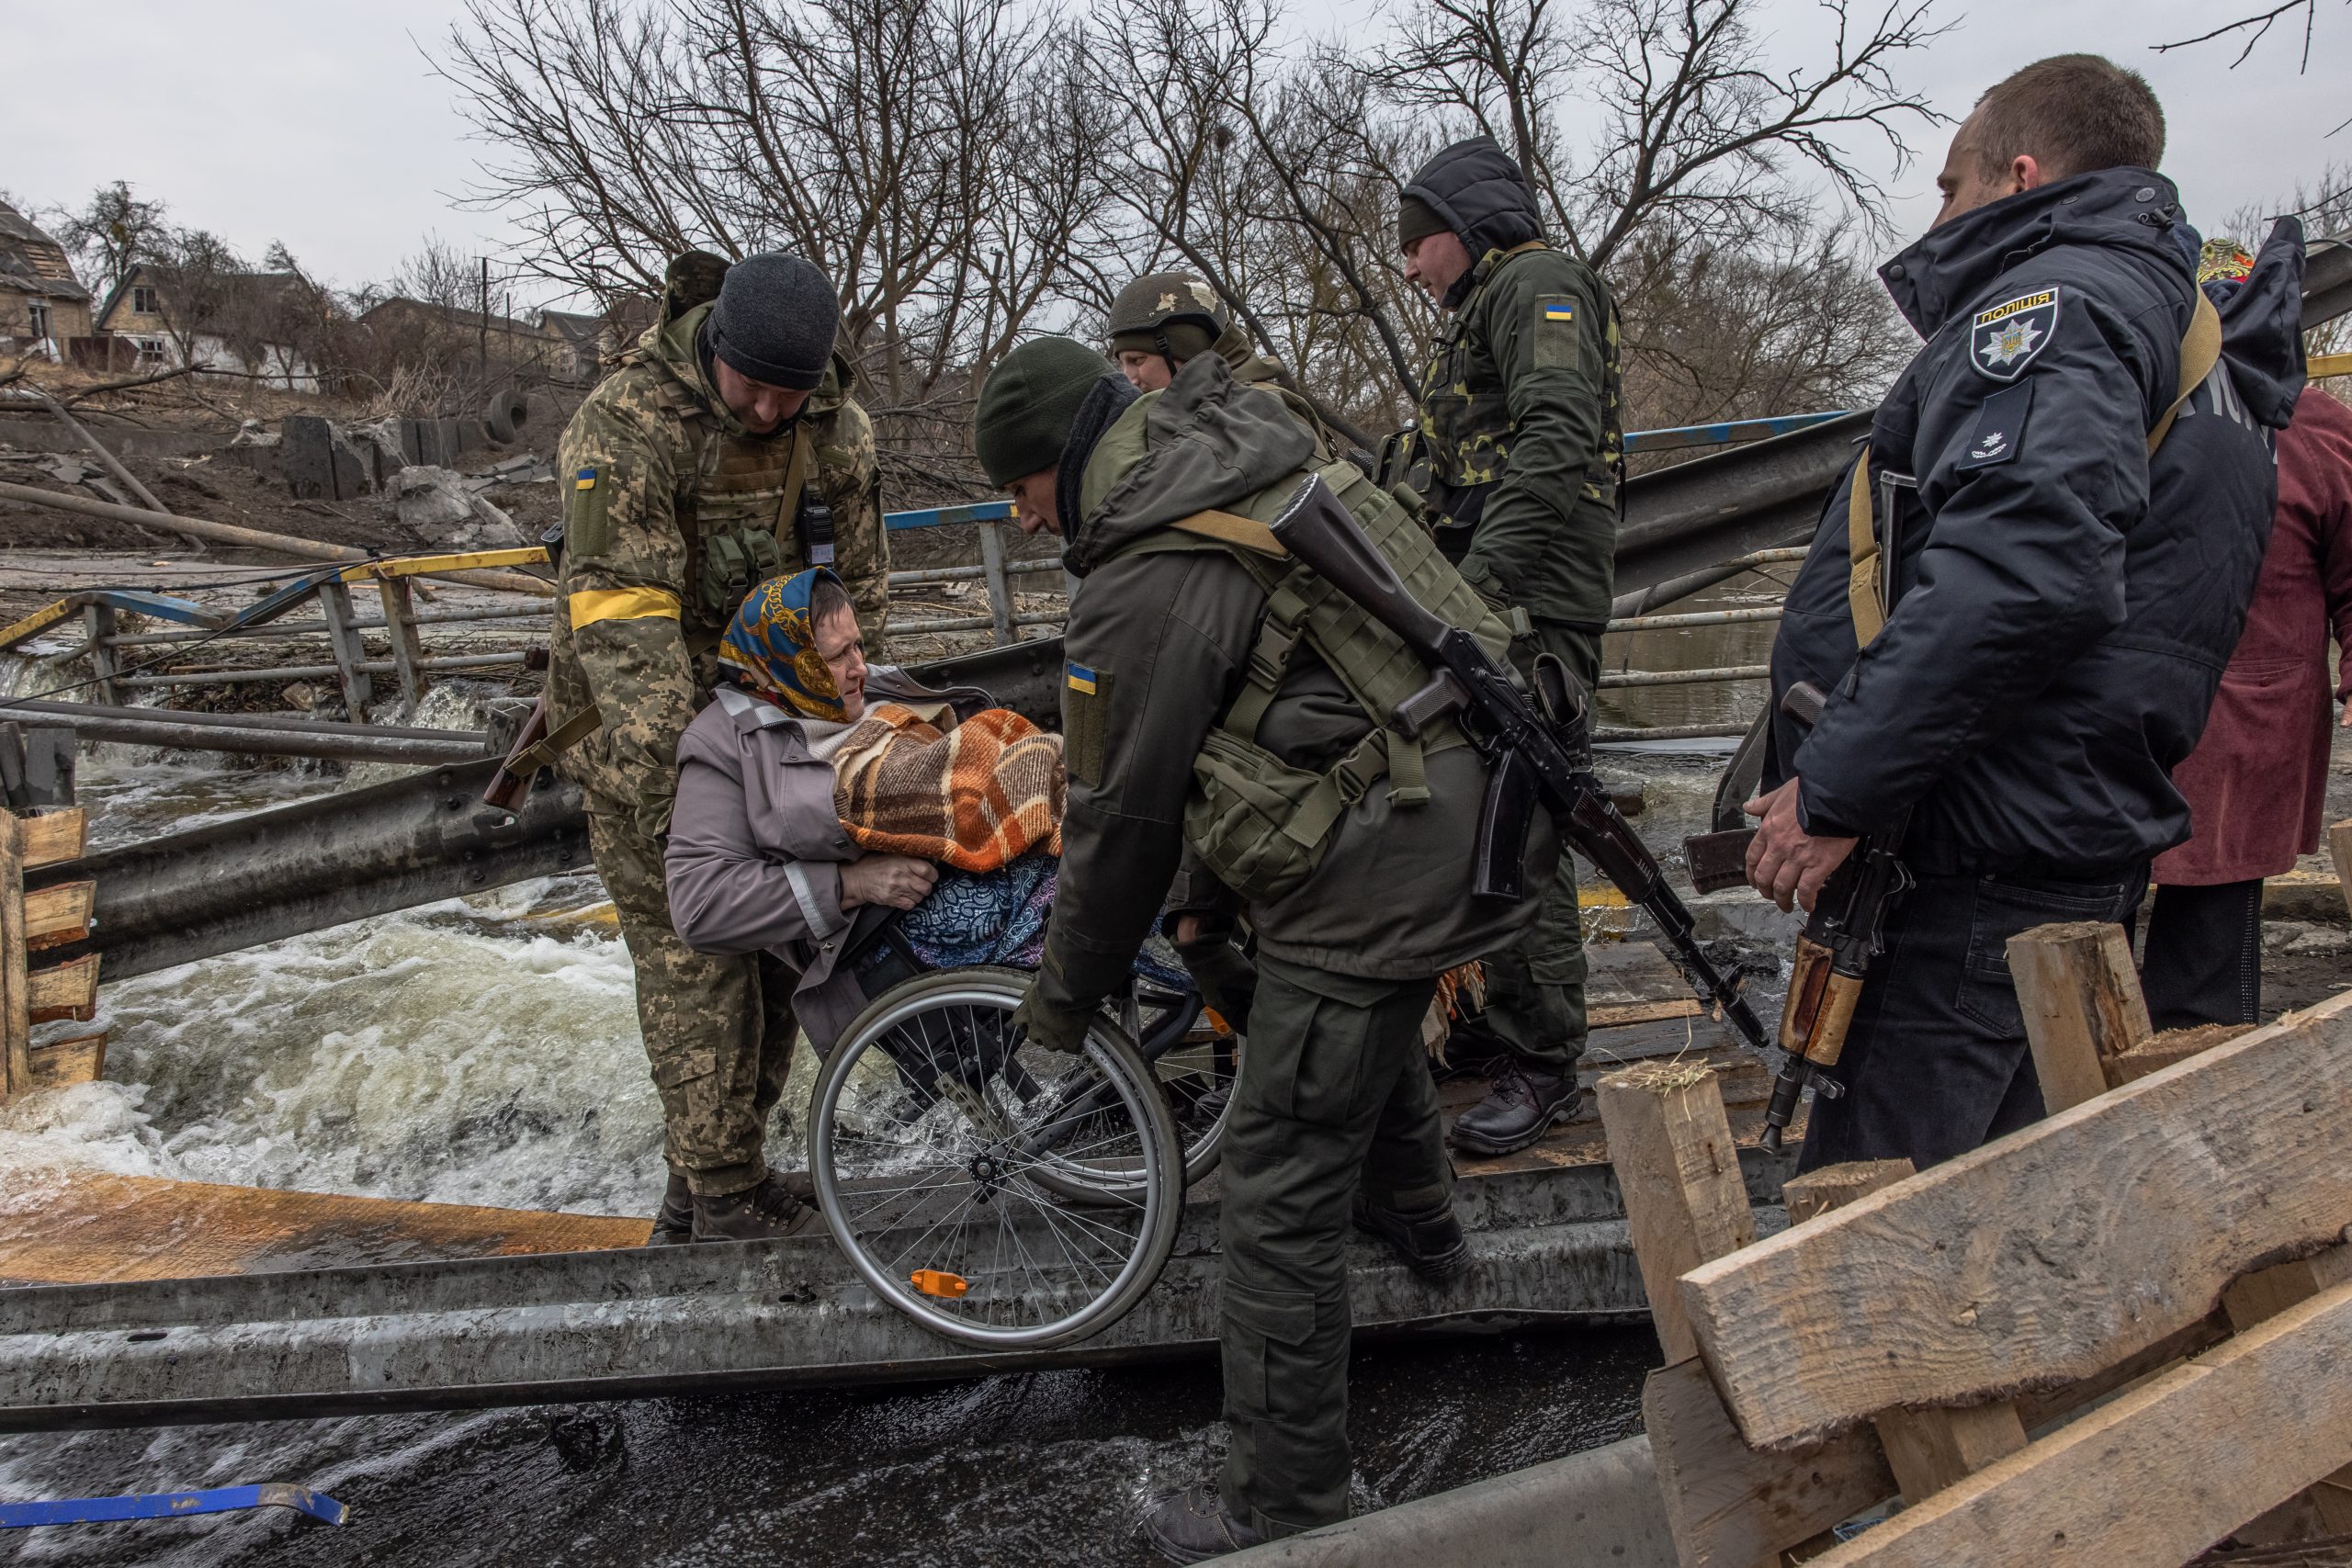 ह्वीलचेयरमा बसेकी एउटी महिलालाई सिपाहीहरूले युक्रेनको कीभमा भत्किएको पुलमाथि बोकेका छन्